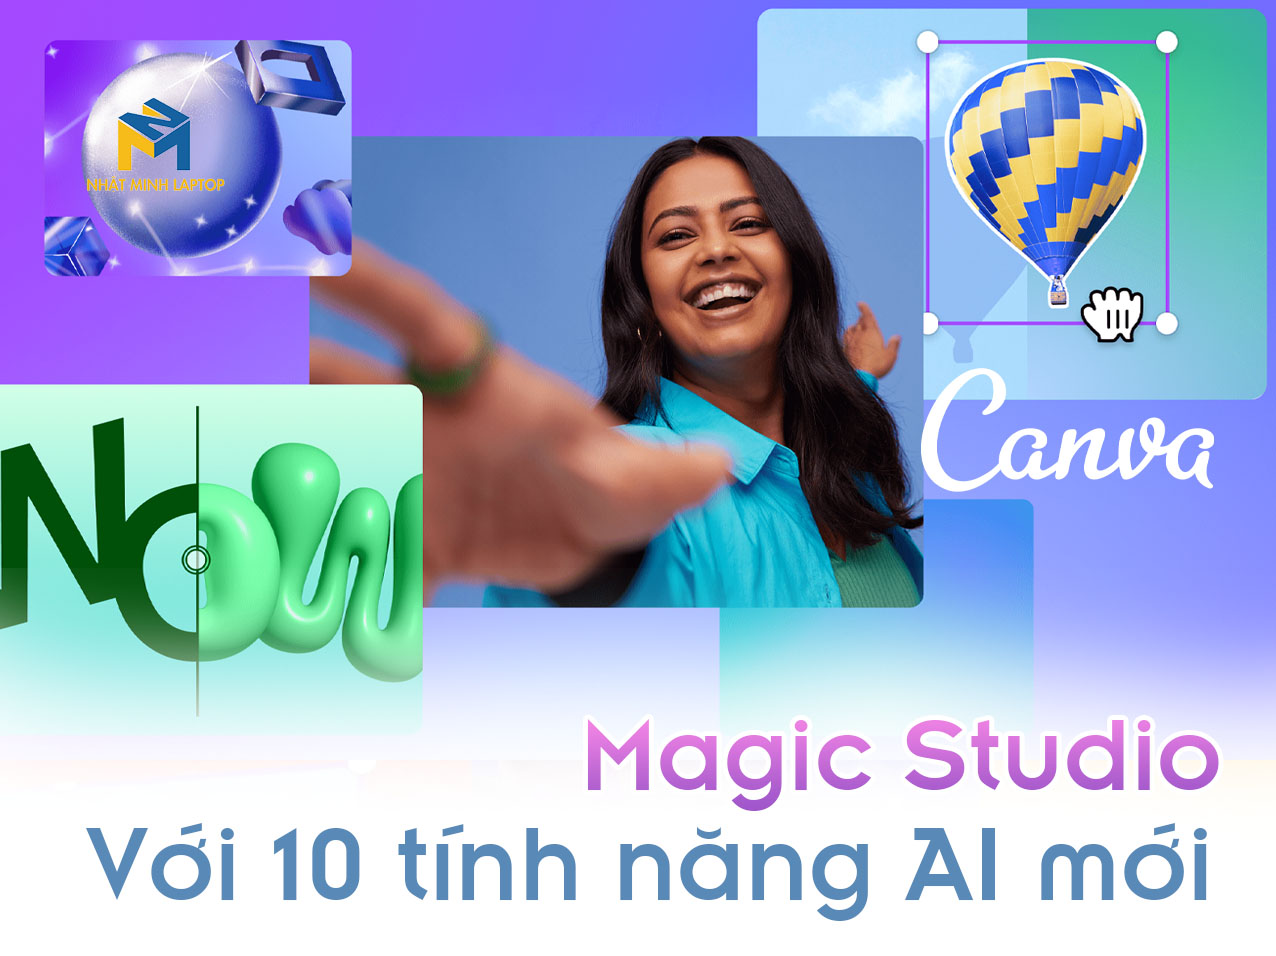 CANVA Ra mắt công cụ Magic Studio hơn 10 tính năng mới